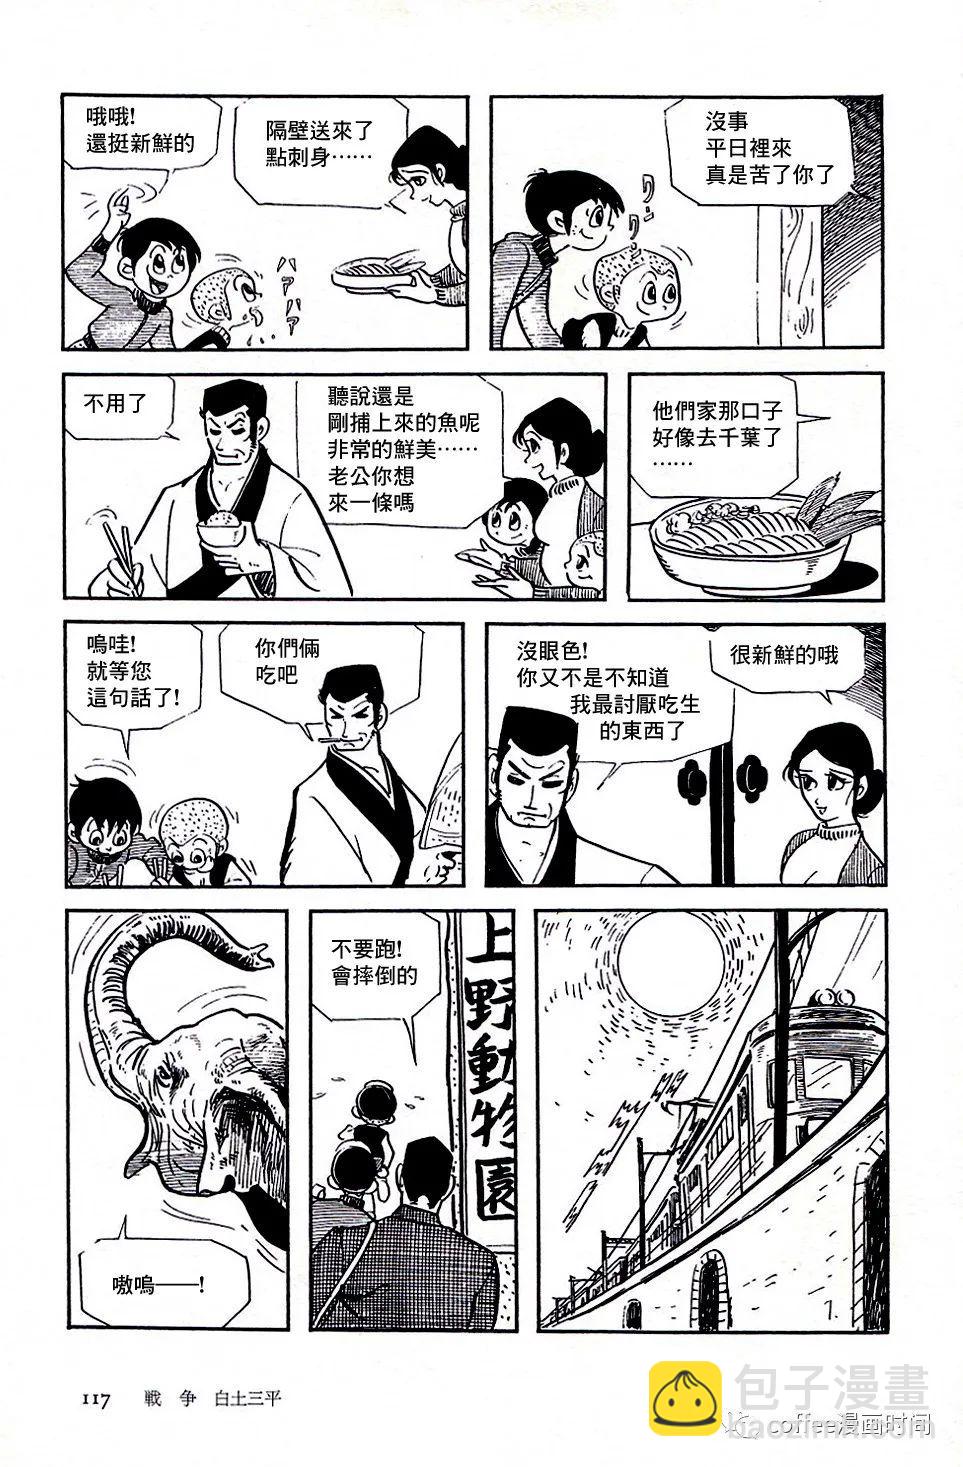 日本短篇漫畫傑作集 - 白土三平《戰爭》 - 7